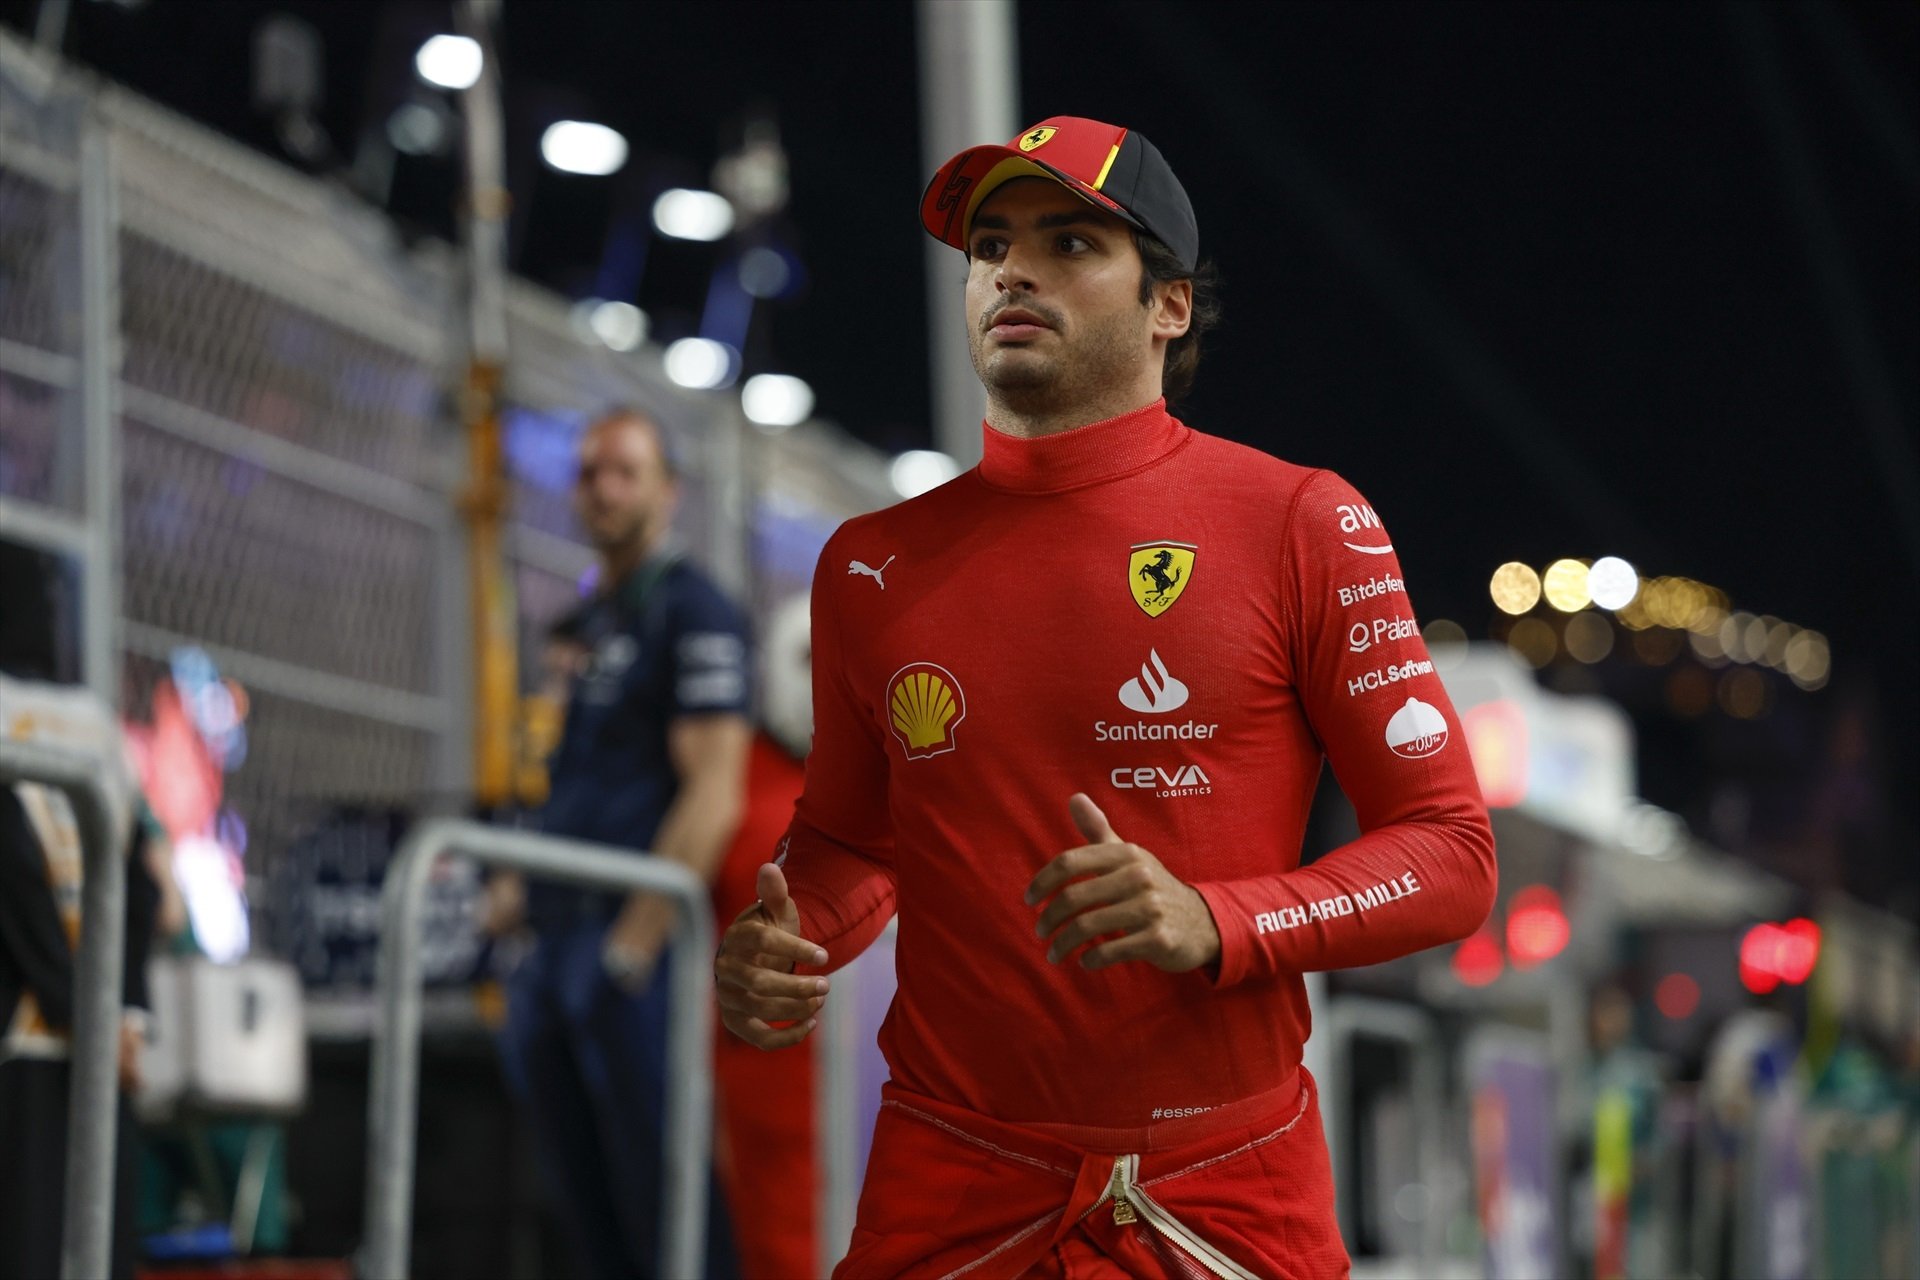 Carlos Sainz, sentenciat pels caps de Ferrari: li estan buscant substitut, Leclerc no el vol